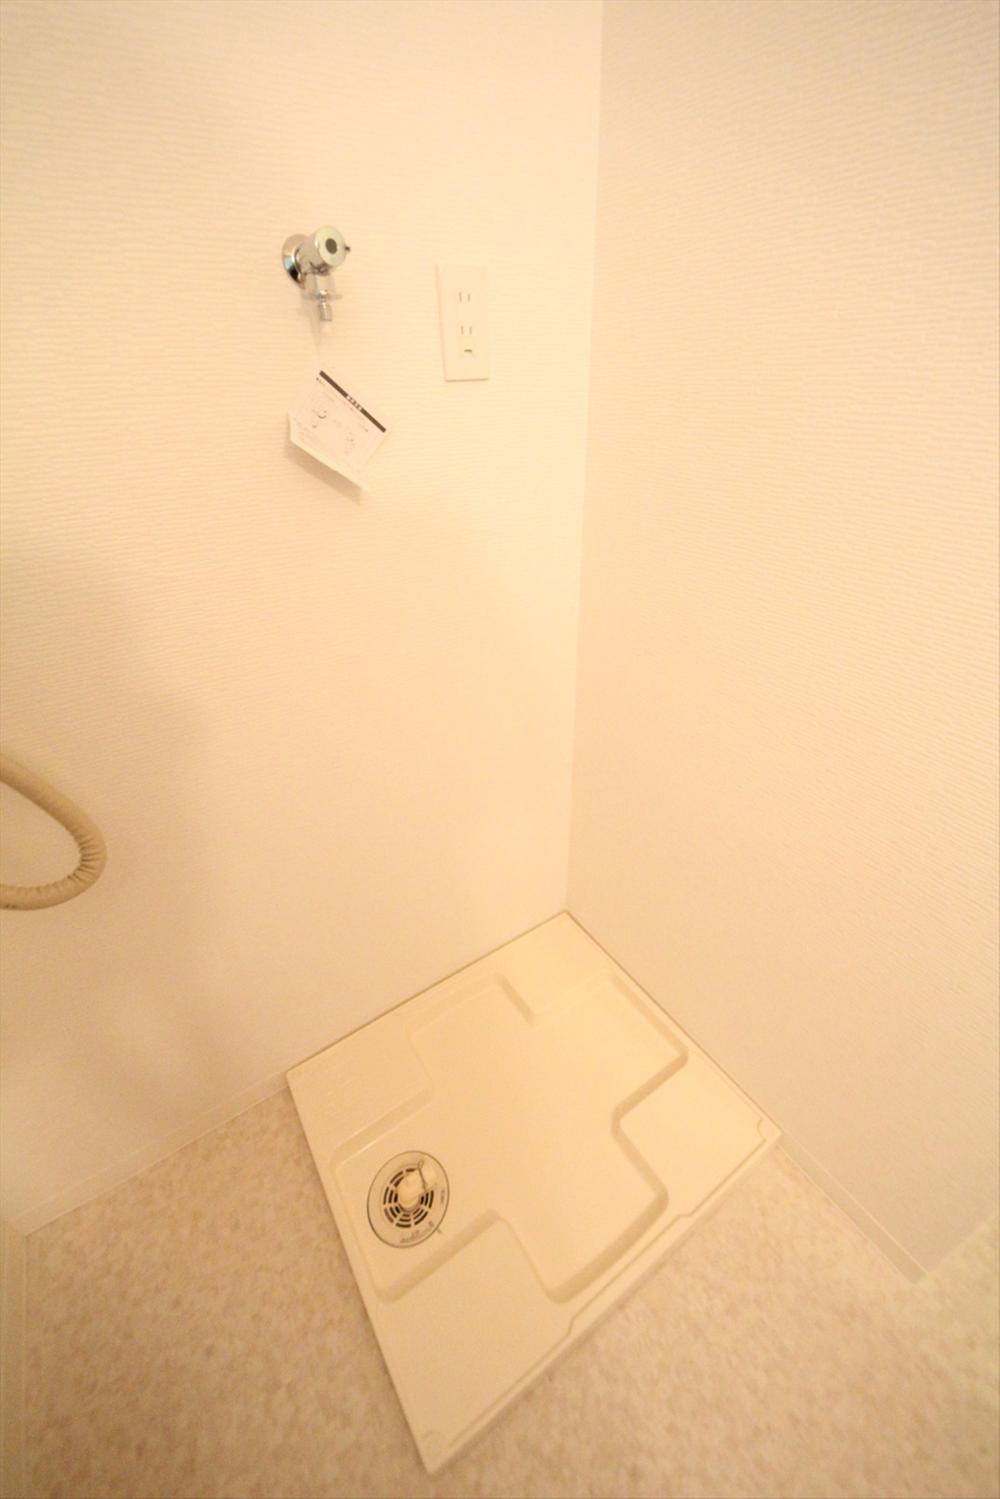 Wash basin, toilet. (November 2013) Shooting